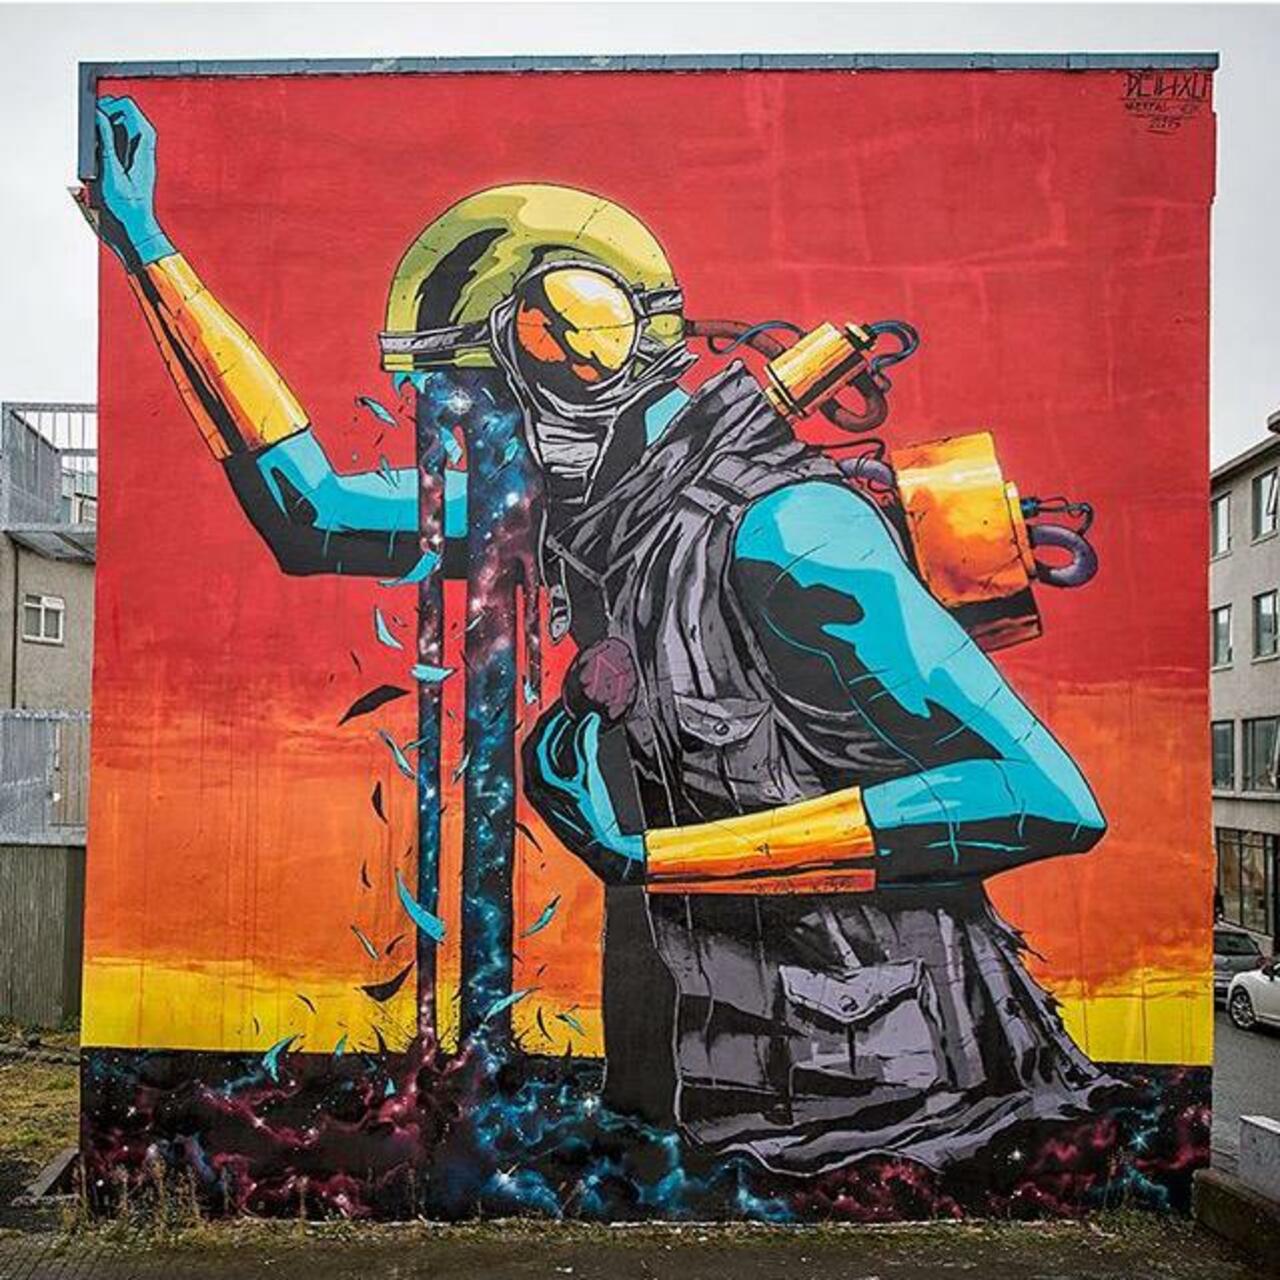 Street Art by Deih in Reykjavik 

#art #graffiti #mural #streetart https://t.co/CgVixw5OIC